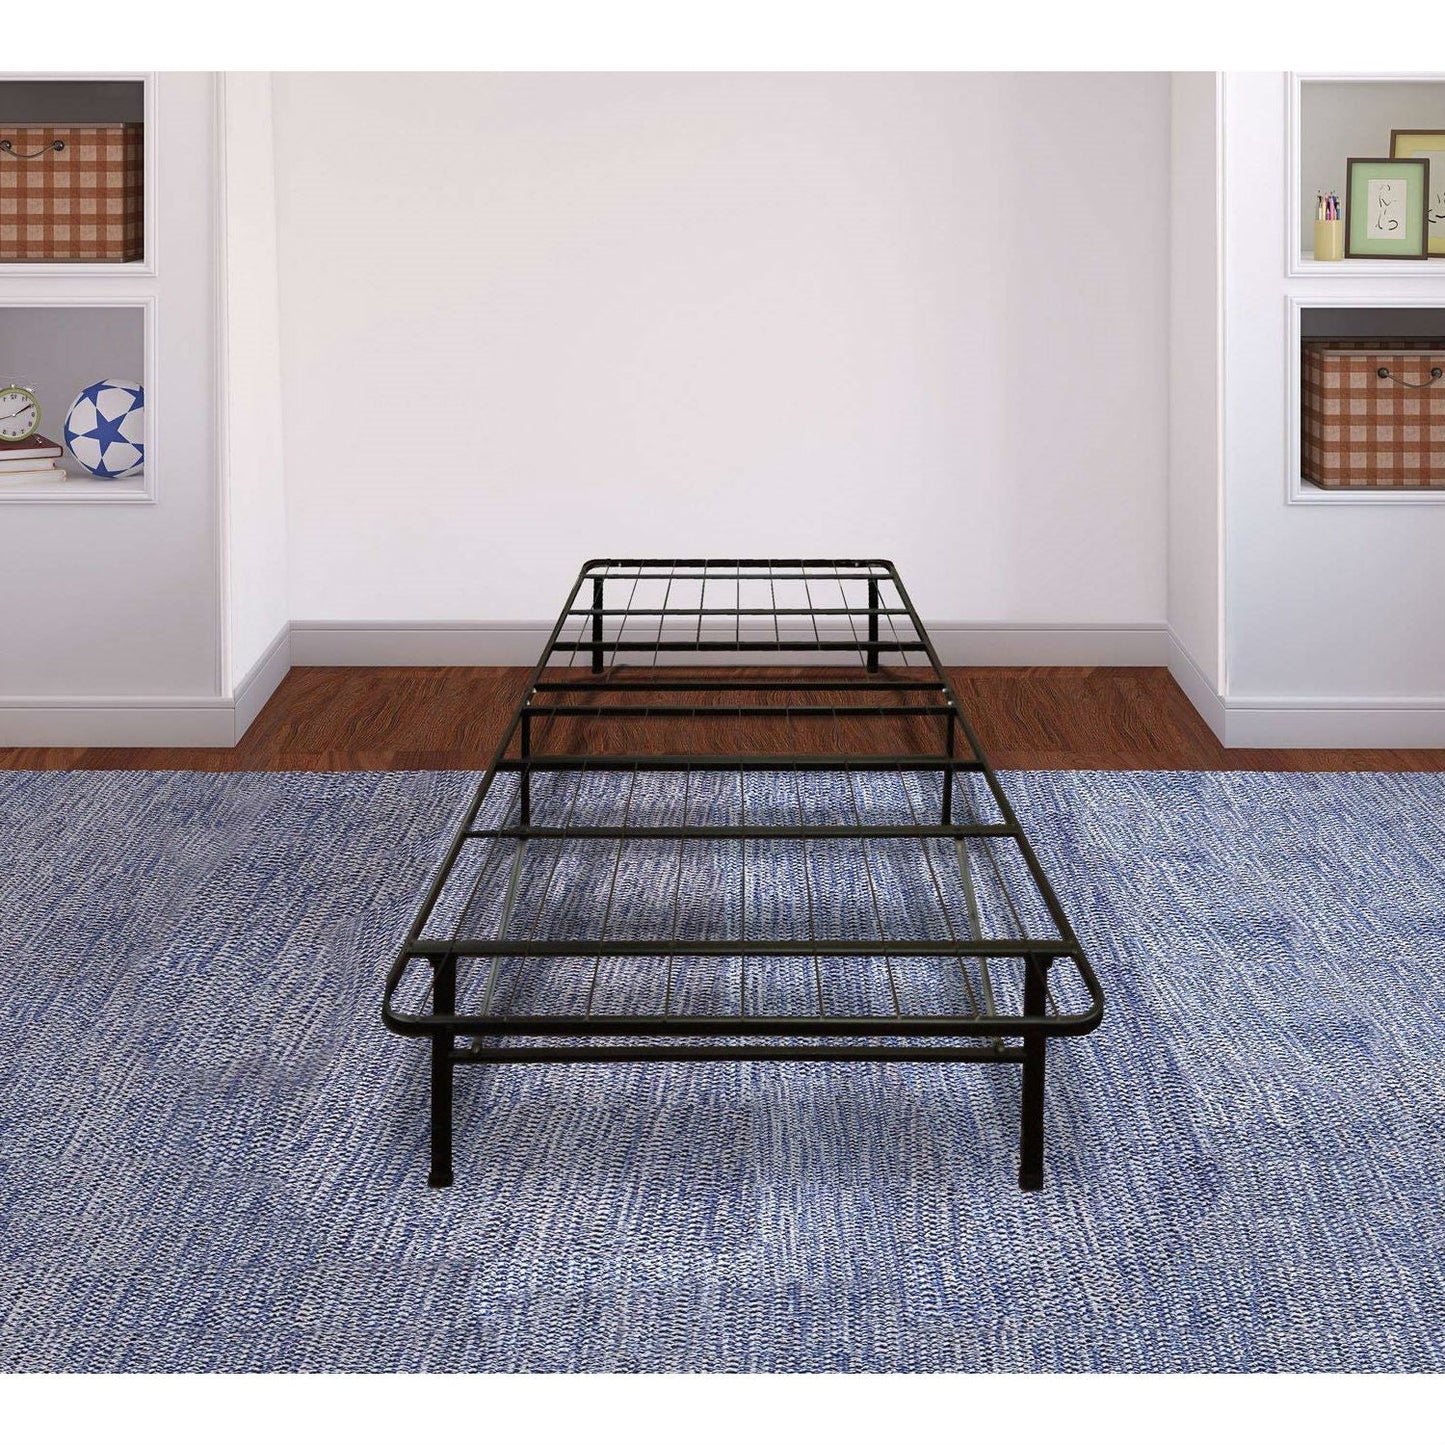 Bedroom > Bed Frames > Platform Beds - Twin XL Size Heavy Duty Metal Platform Bed Frame